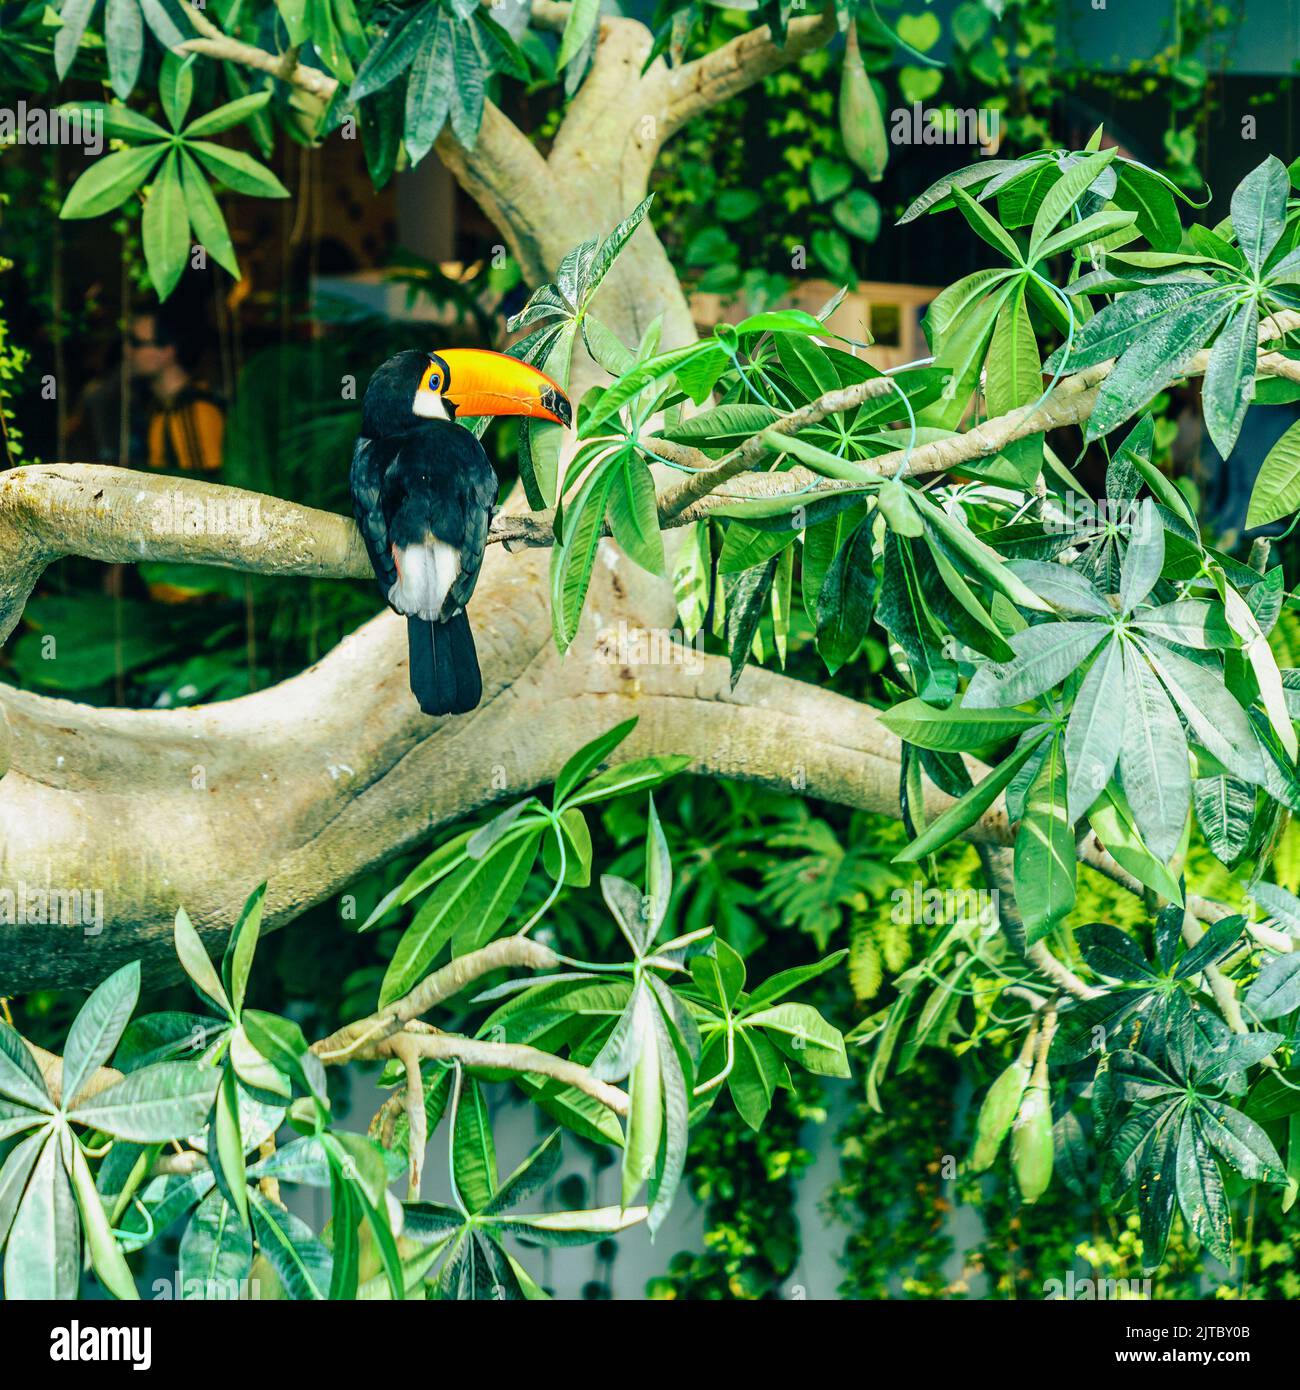 Porträt eines toco-Tucan oder eines riesigen Tucan in einem Vogelschutzgebiet Stockfoto